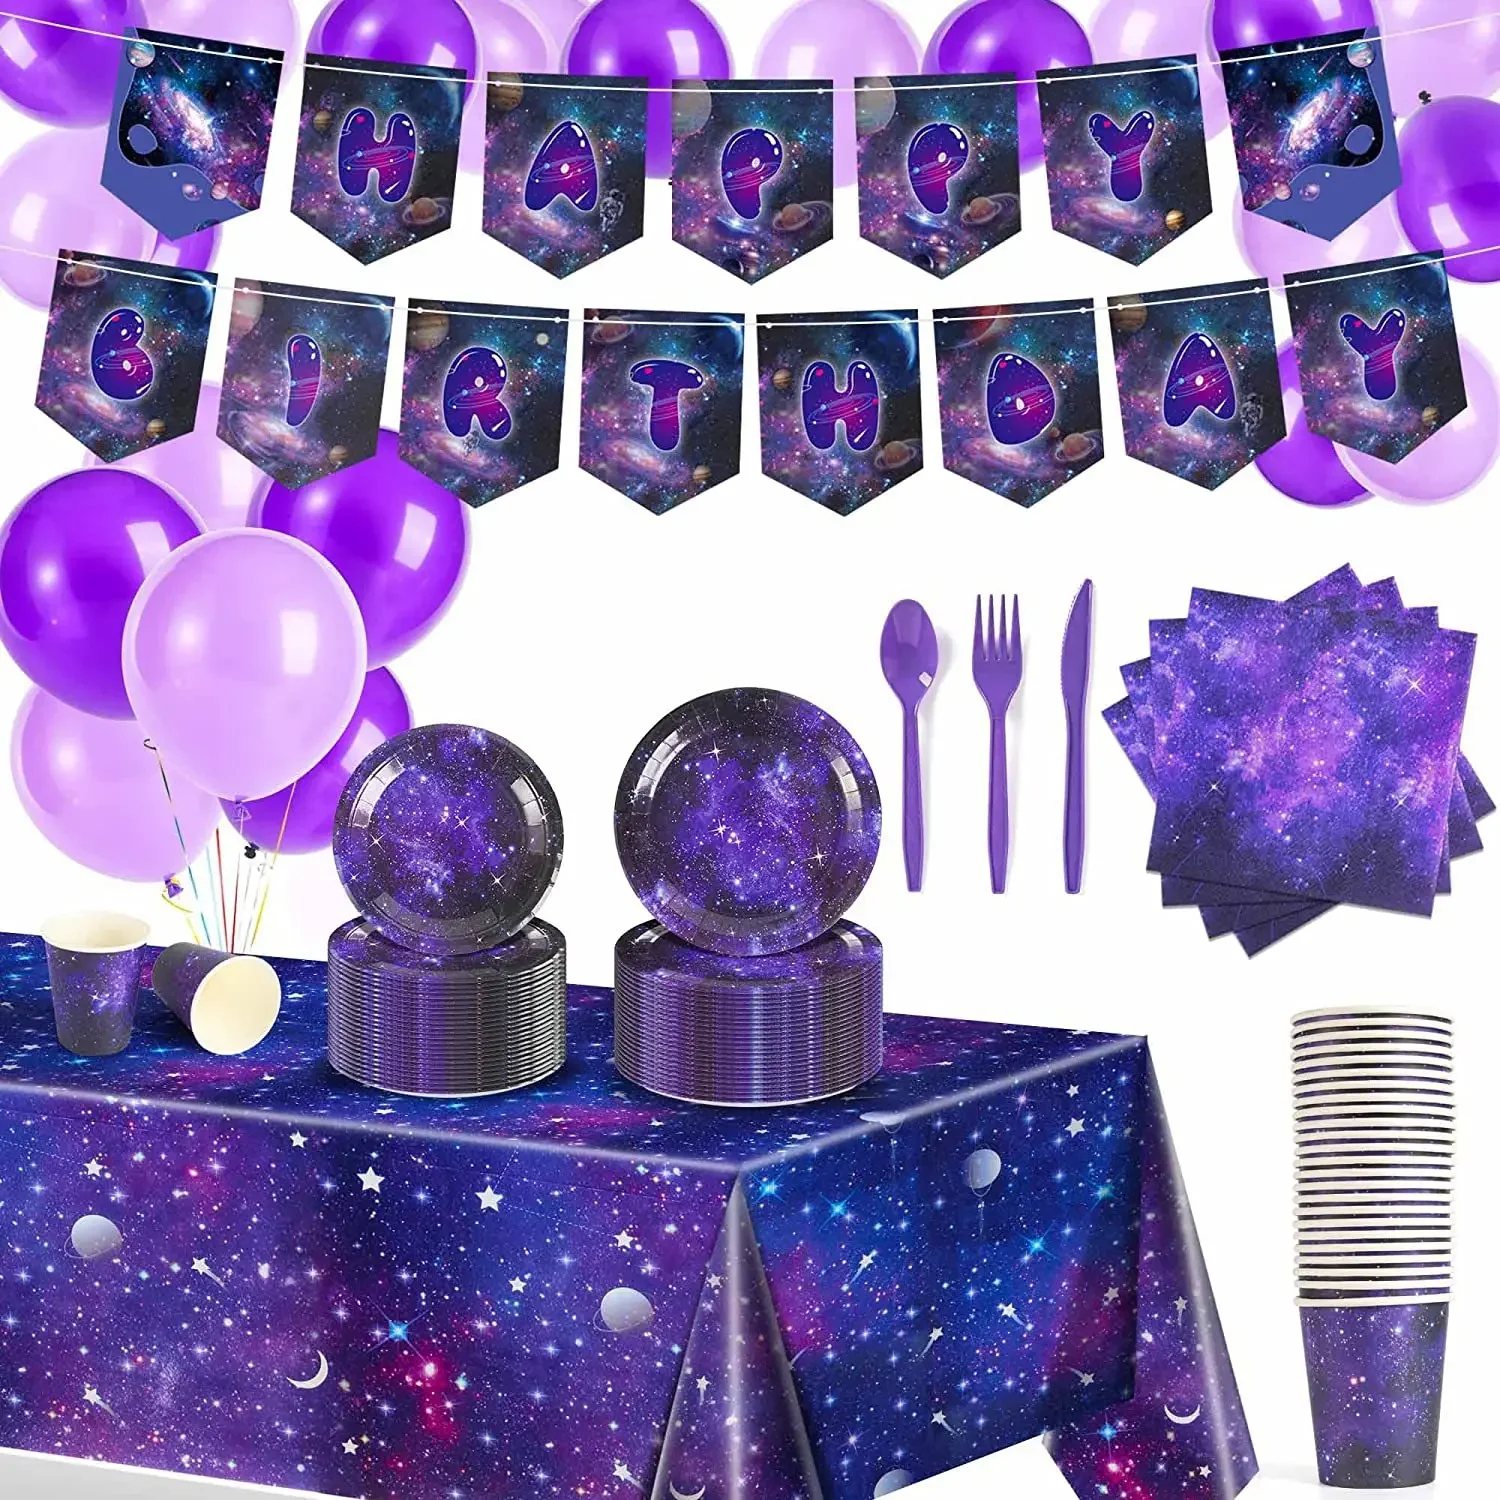 

Одноразовая посуда для вечеринки на 16 человек, декоративная бумажная тарелка с изображением фиолетовых звезд и галактики, бумажный стакан, нож и вилка, ложка для детей